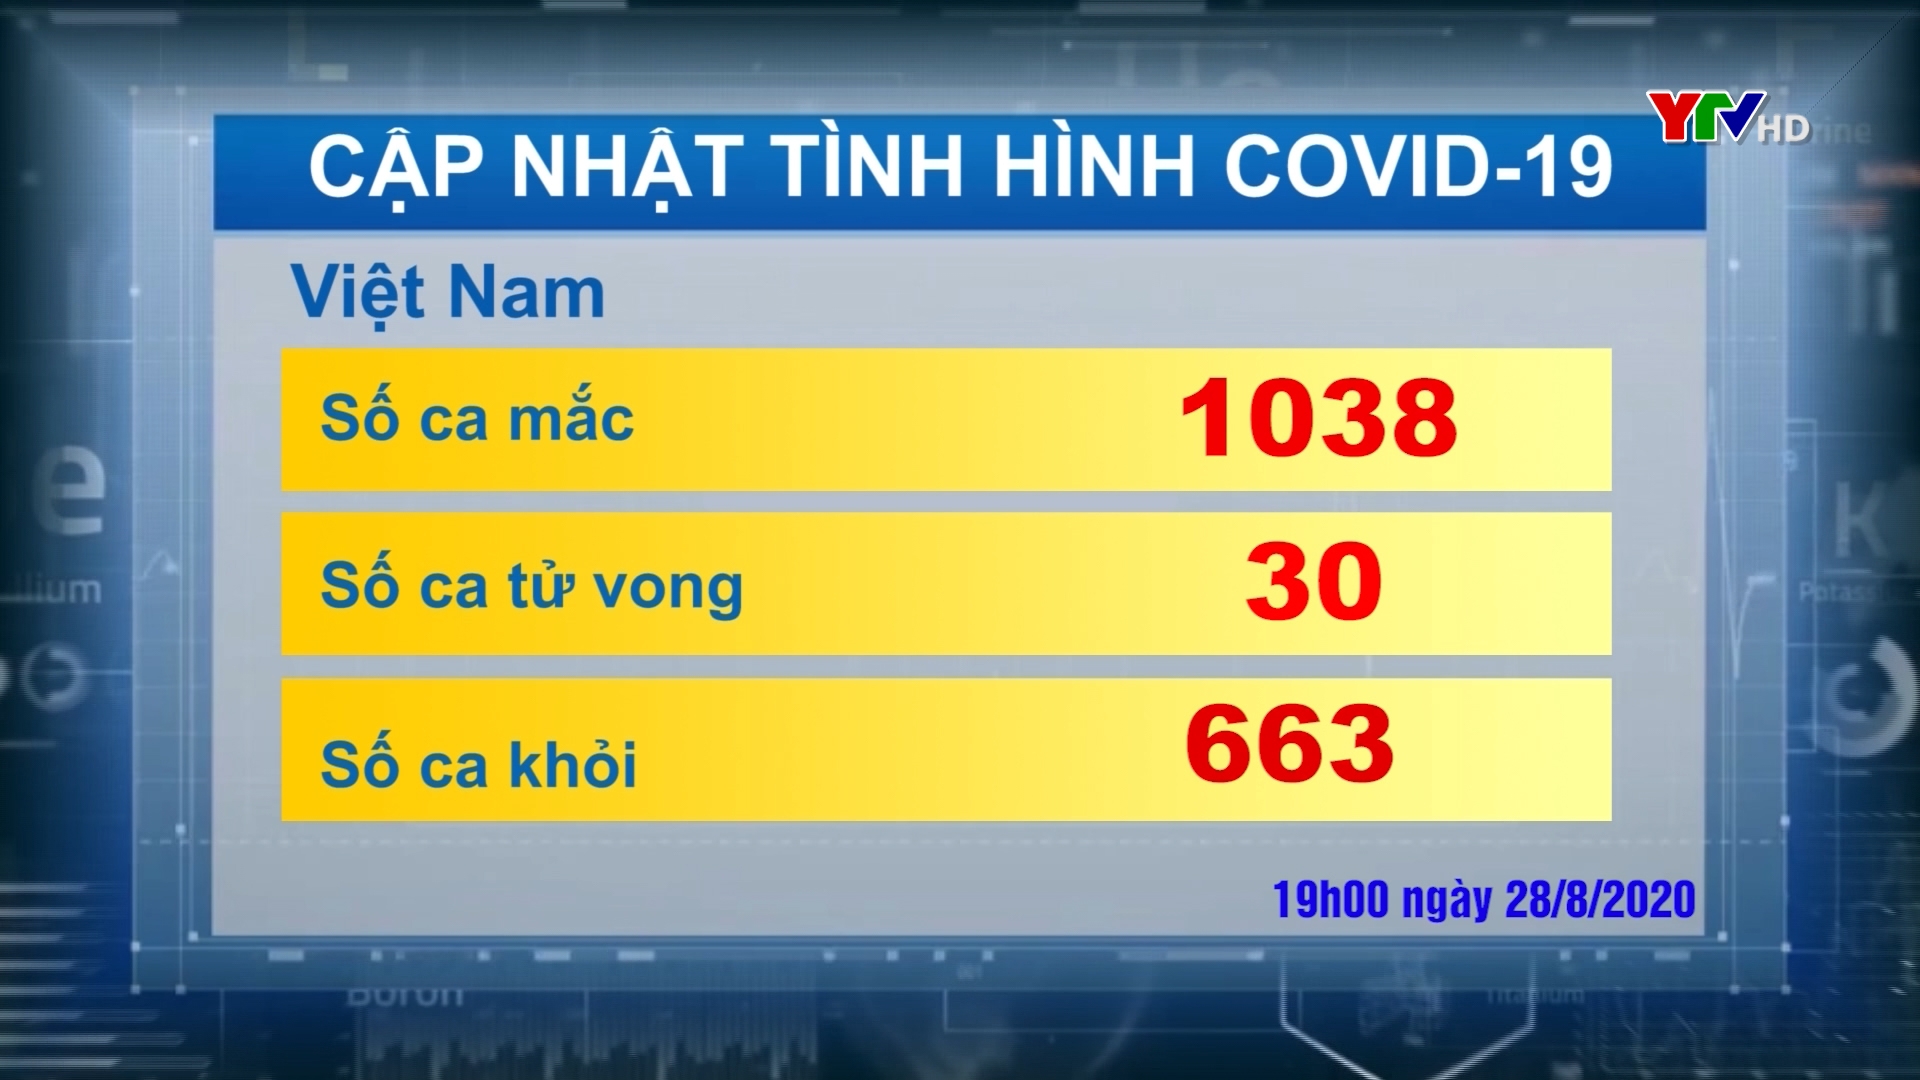 Việt Nam ghi nhận thêm 2 ca nhiễm COVID - 19